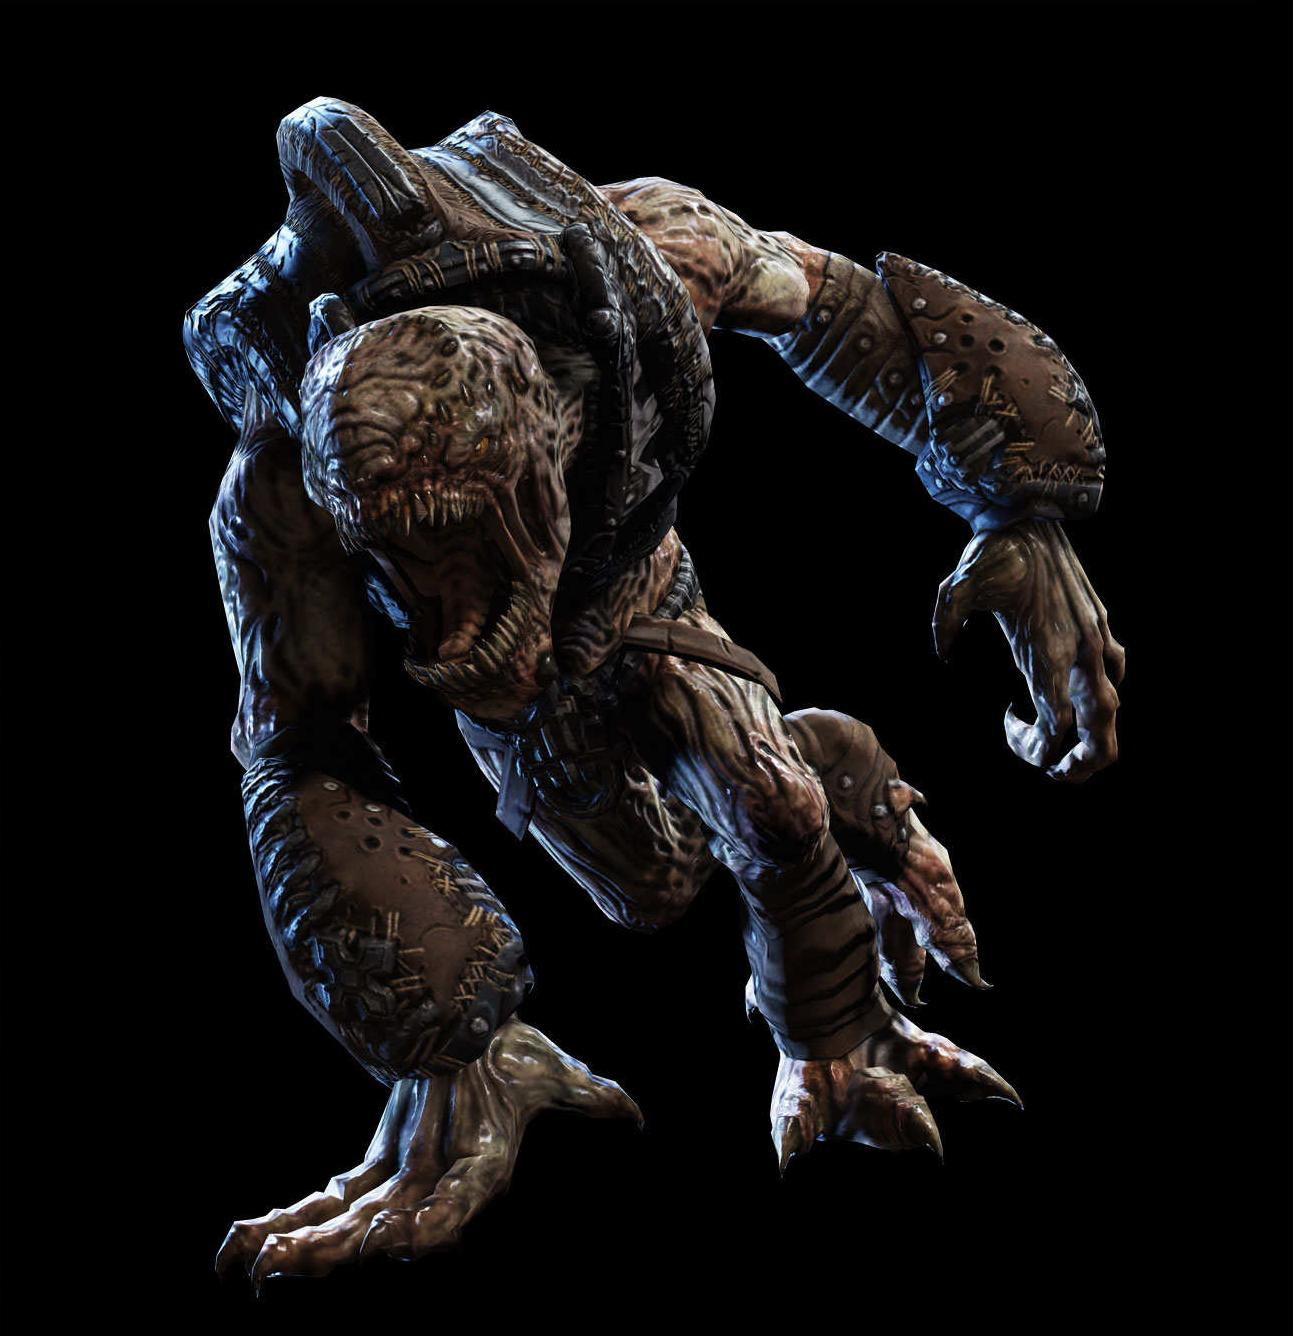 Gallery: Gears of War 2's Creepy New Creatures